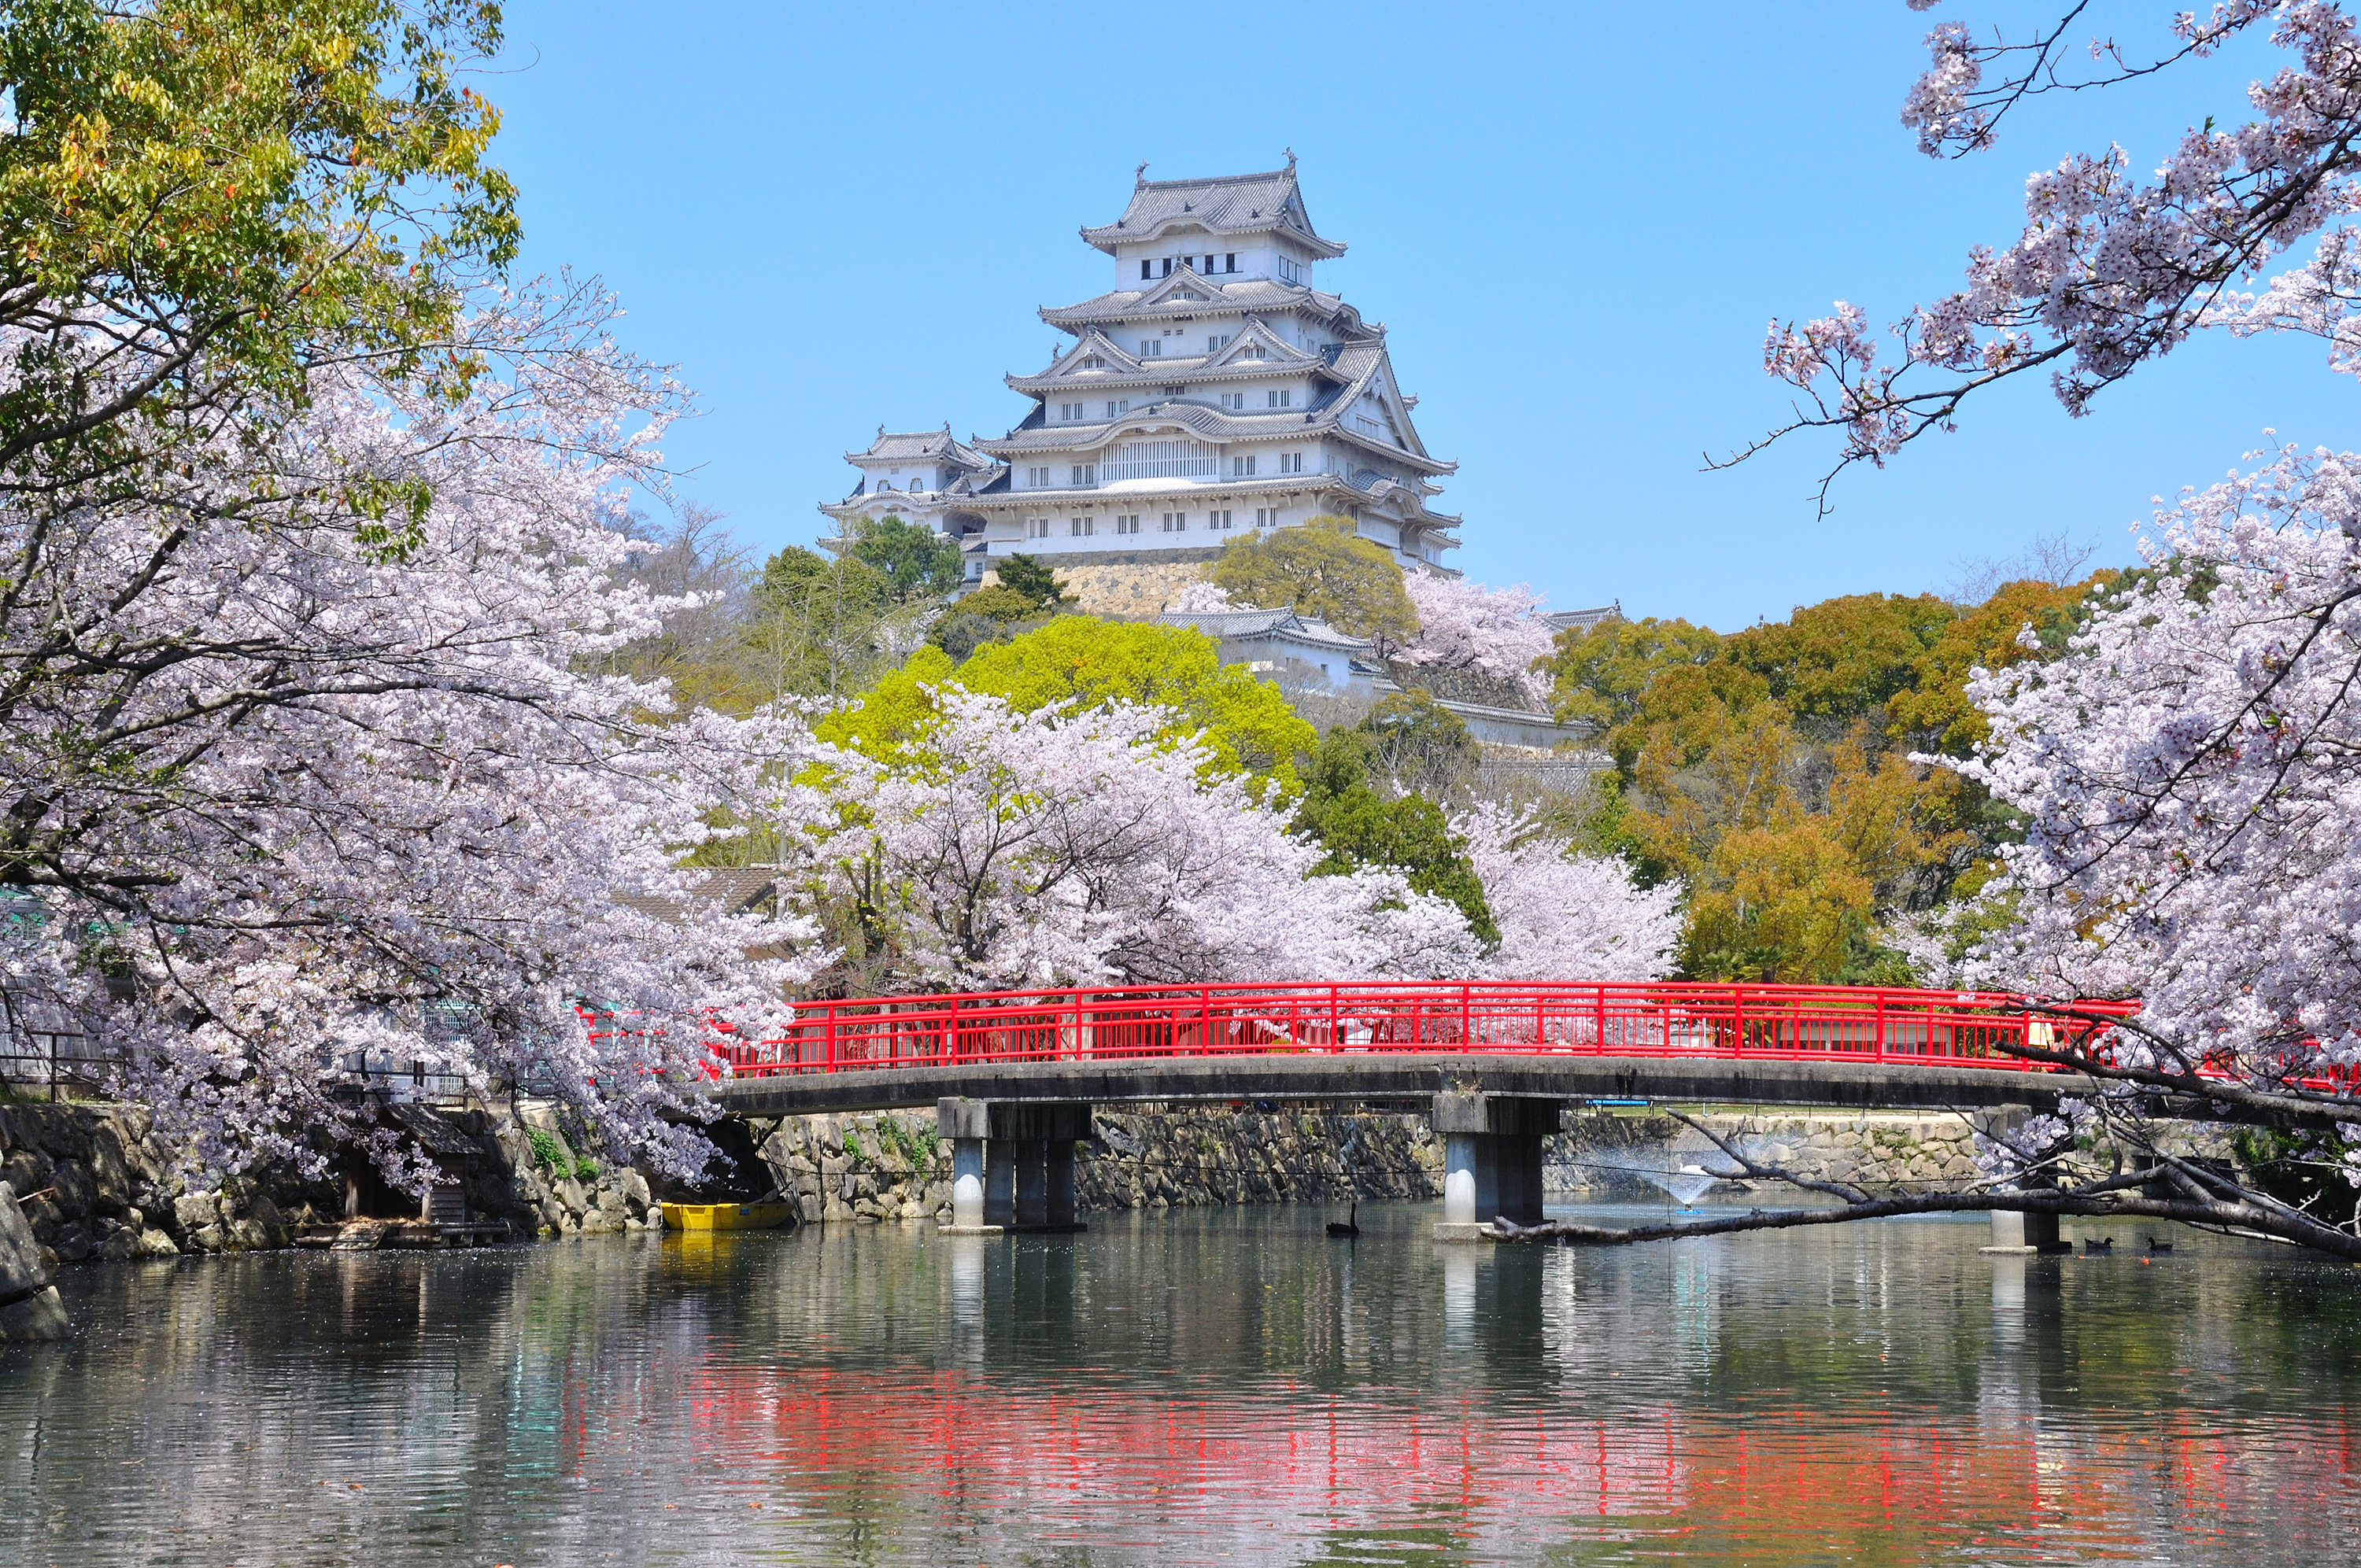 姫路市を楽しむにはここ 姫路 の観光スポットおすすめランキング